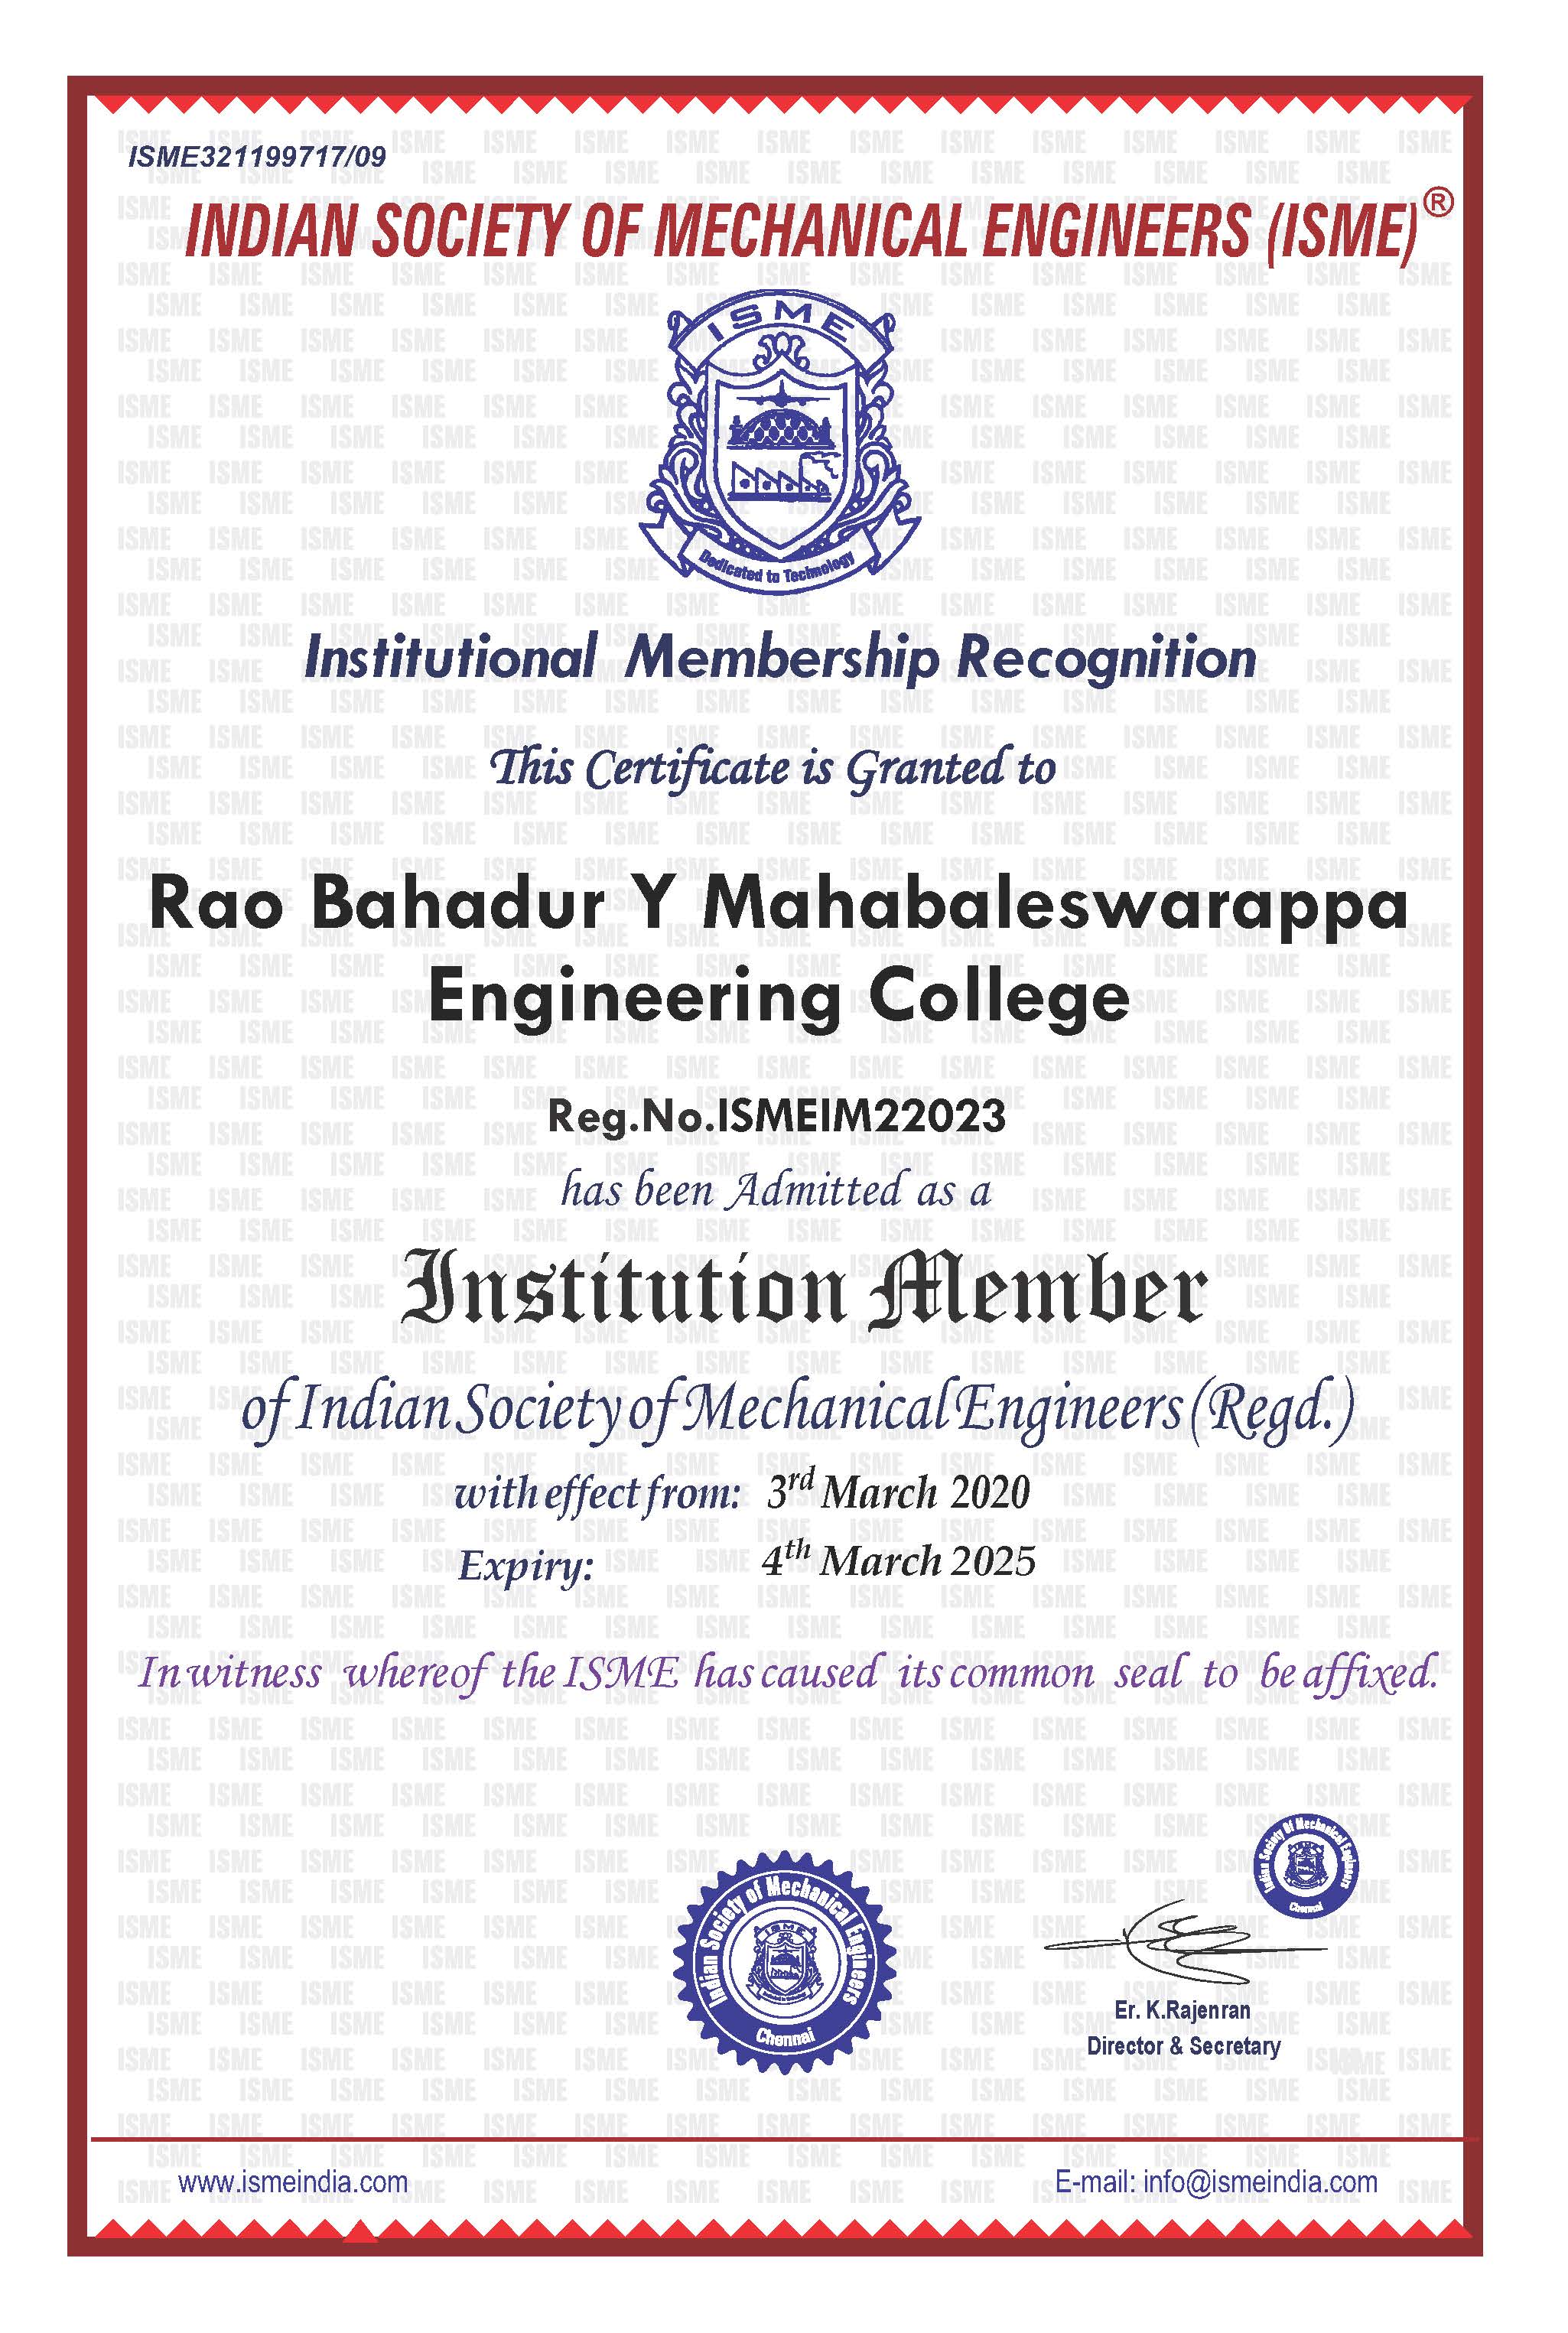 Rao Bahadur Y Mahabaleswarappa Engineering College